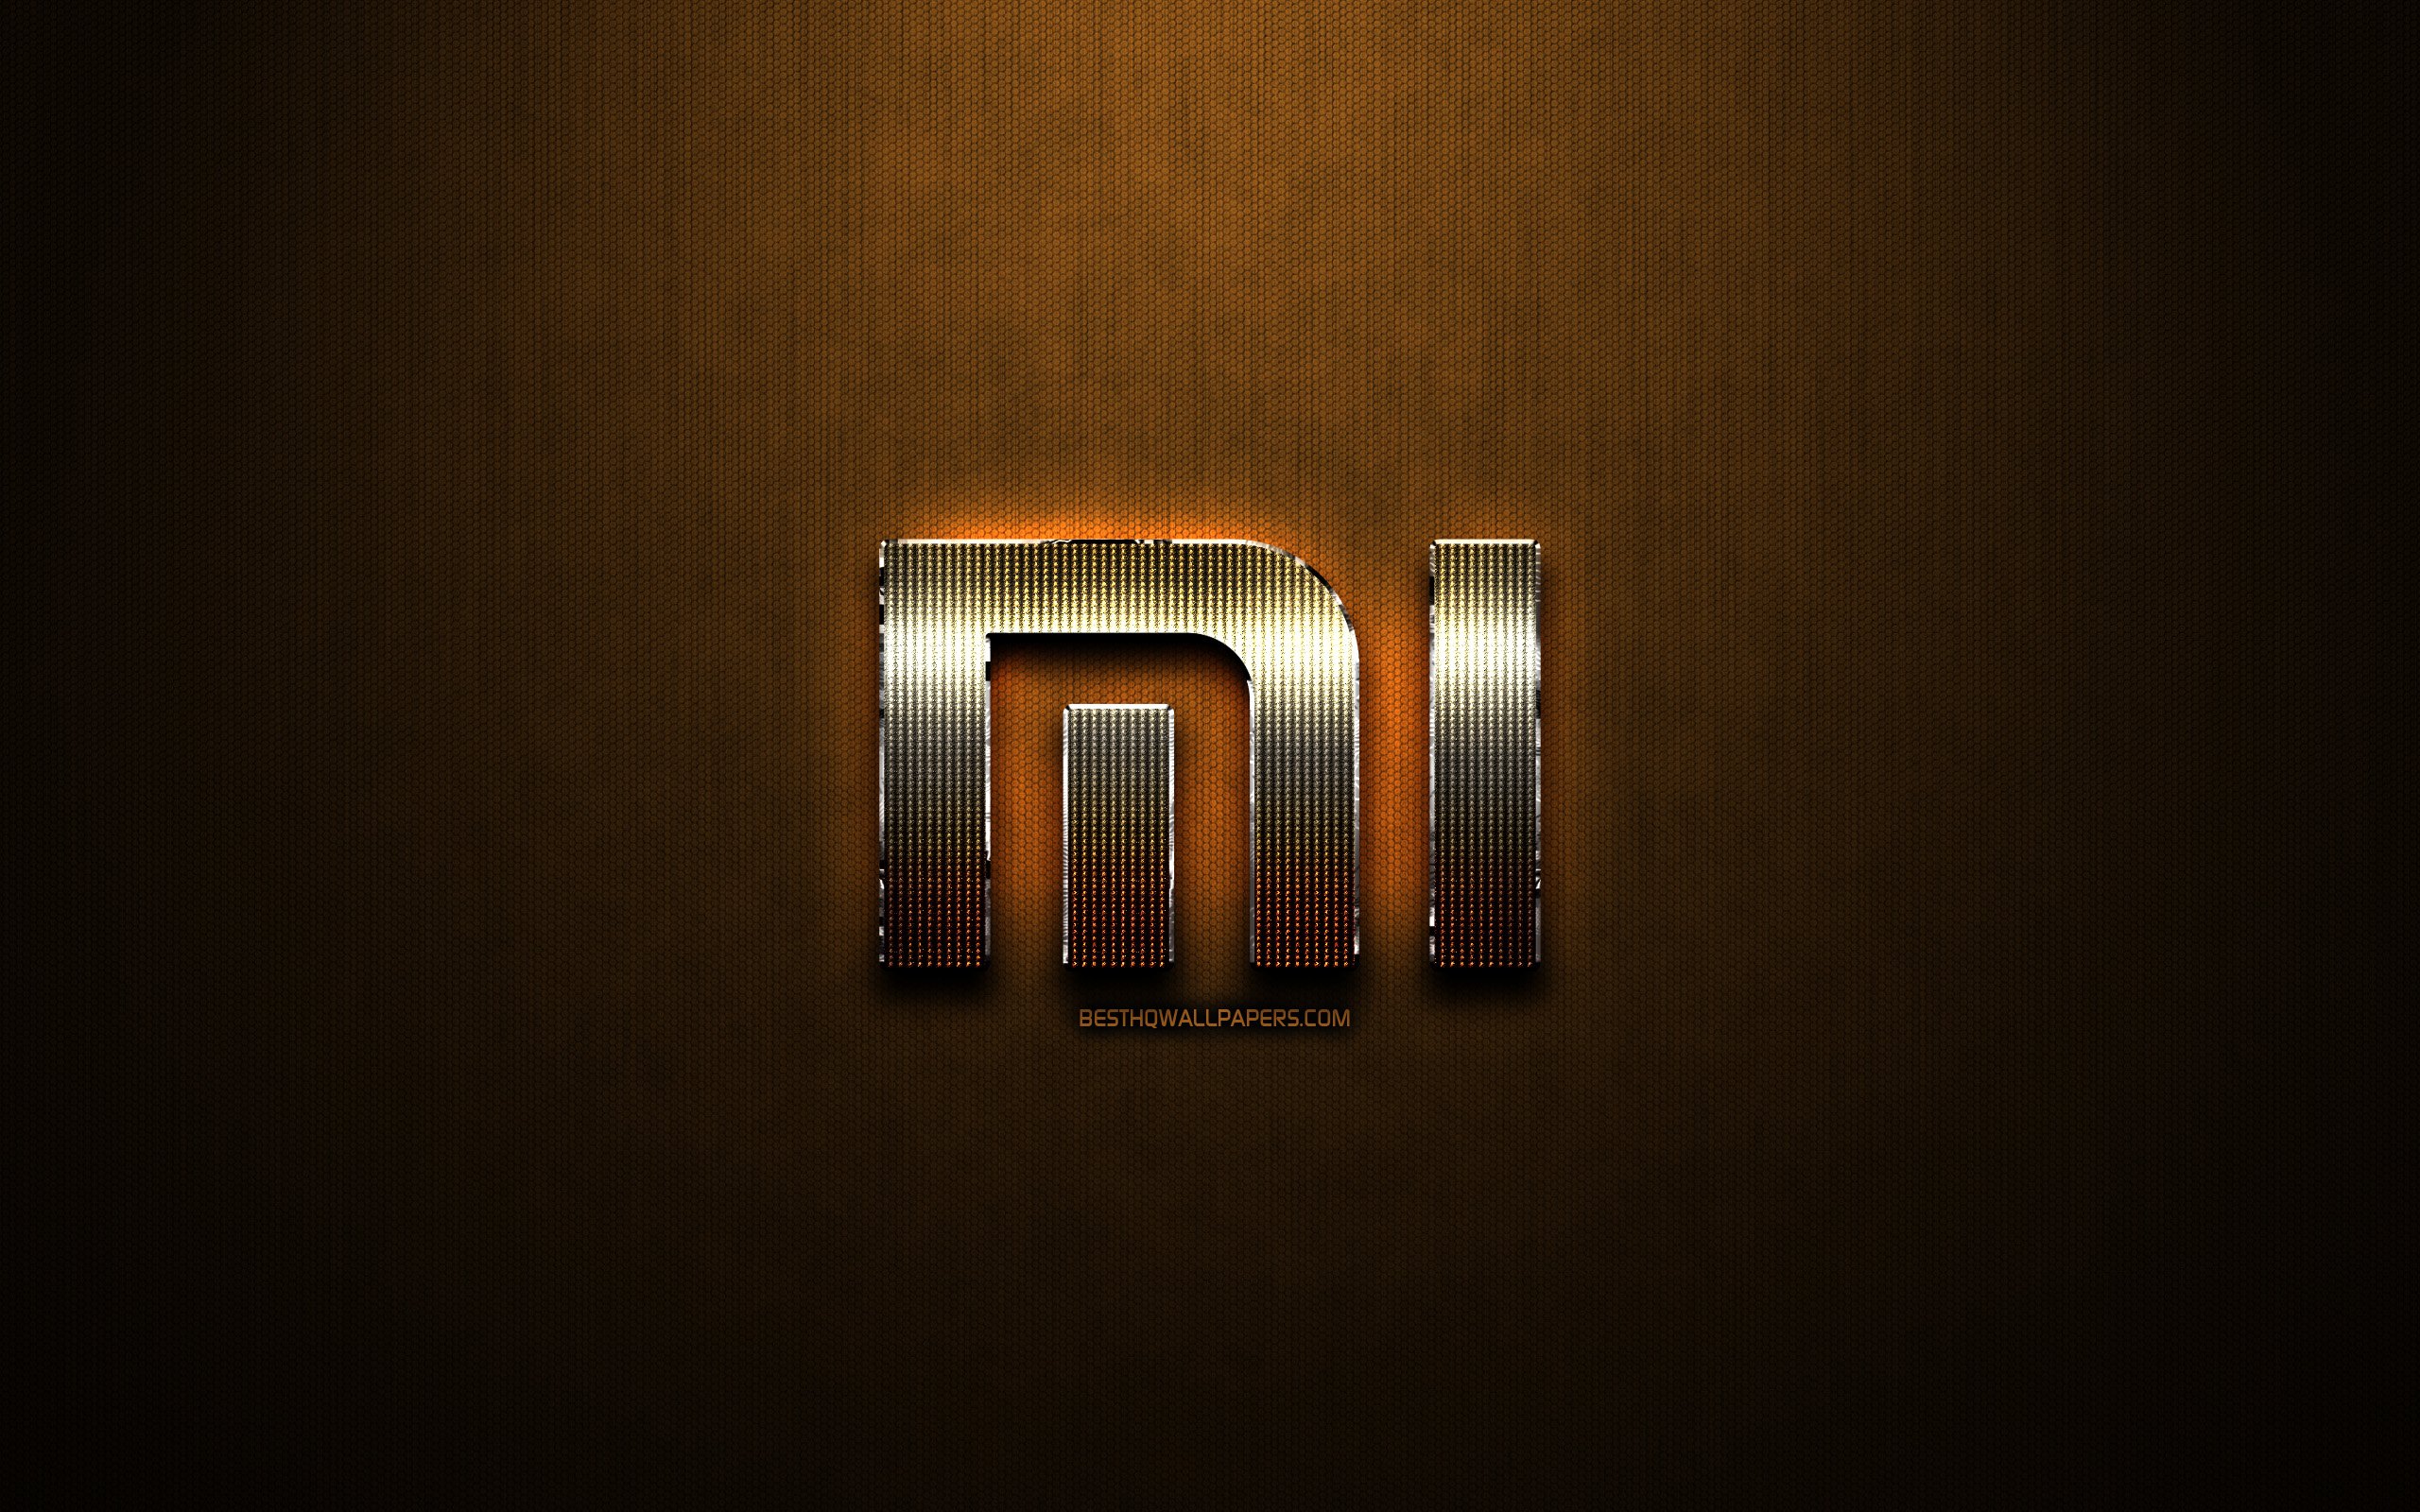 Mi gold. Логотип Xiaomi Redmi. Обои Xiaomi. Обои с логотипом mi. Обои с логотипом Xiaomi.